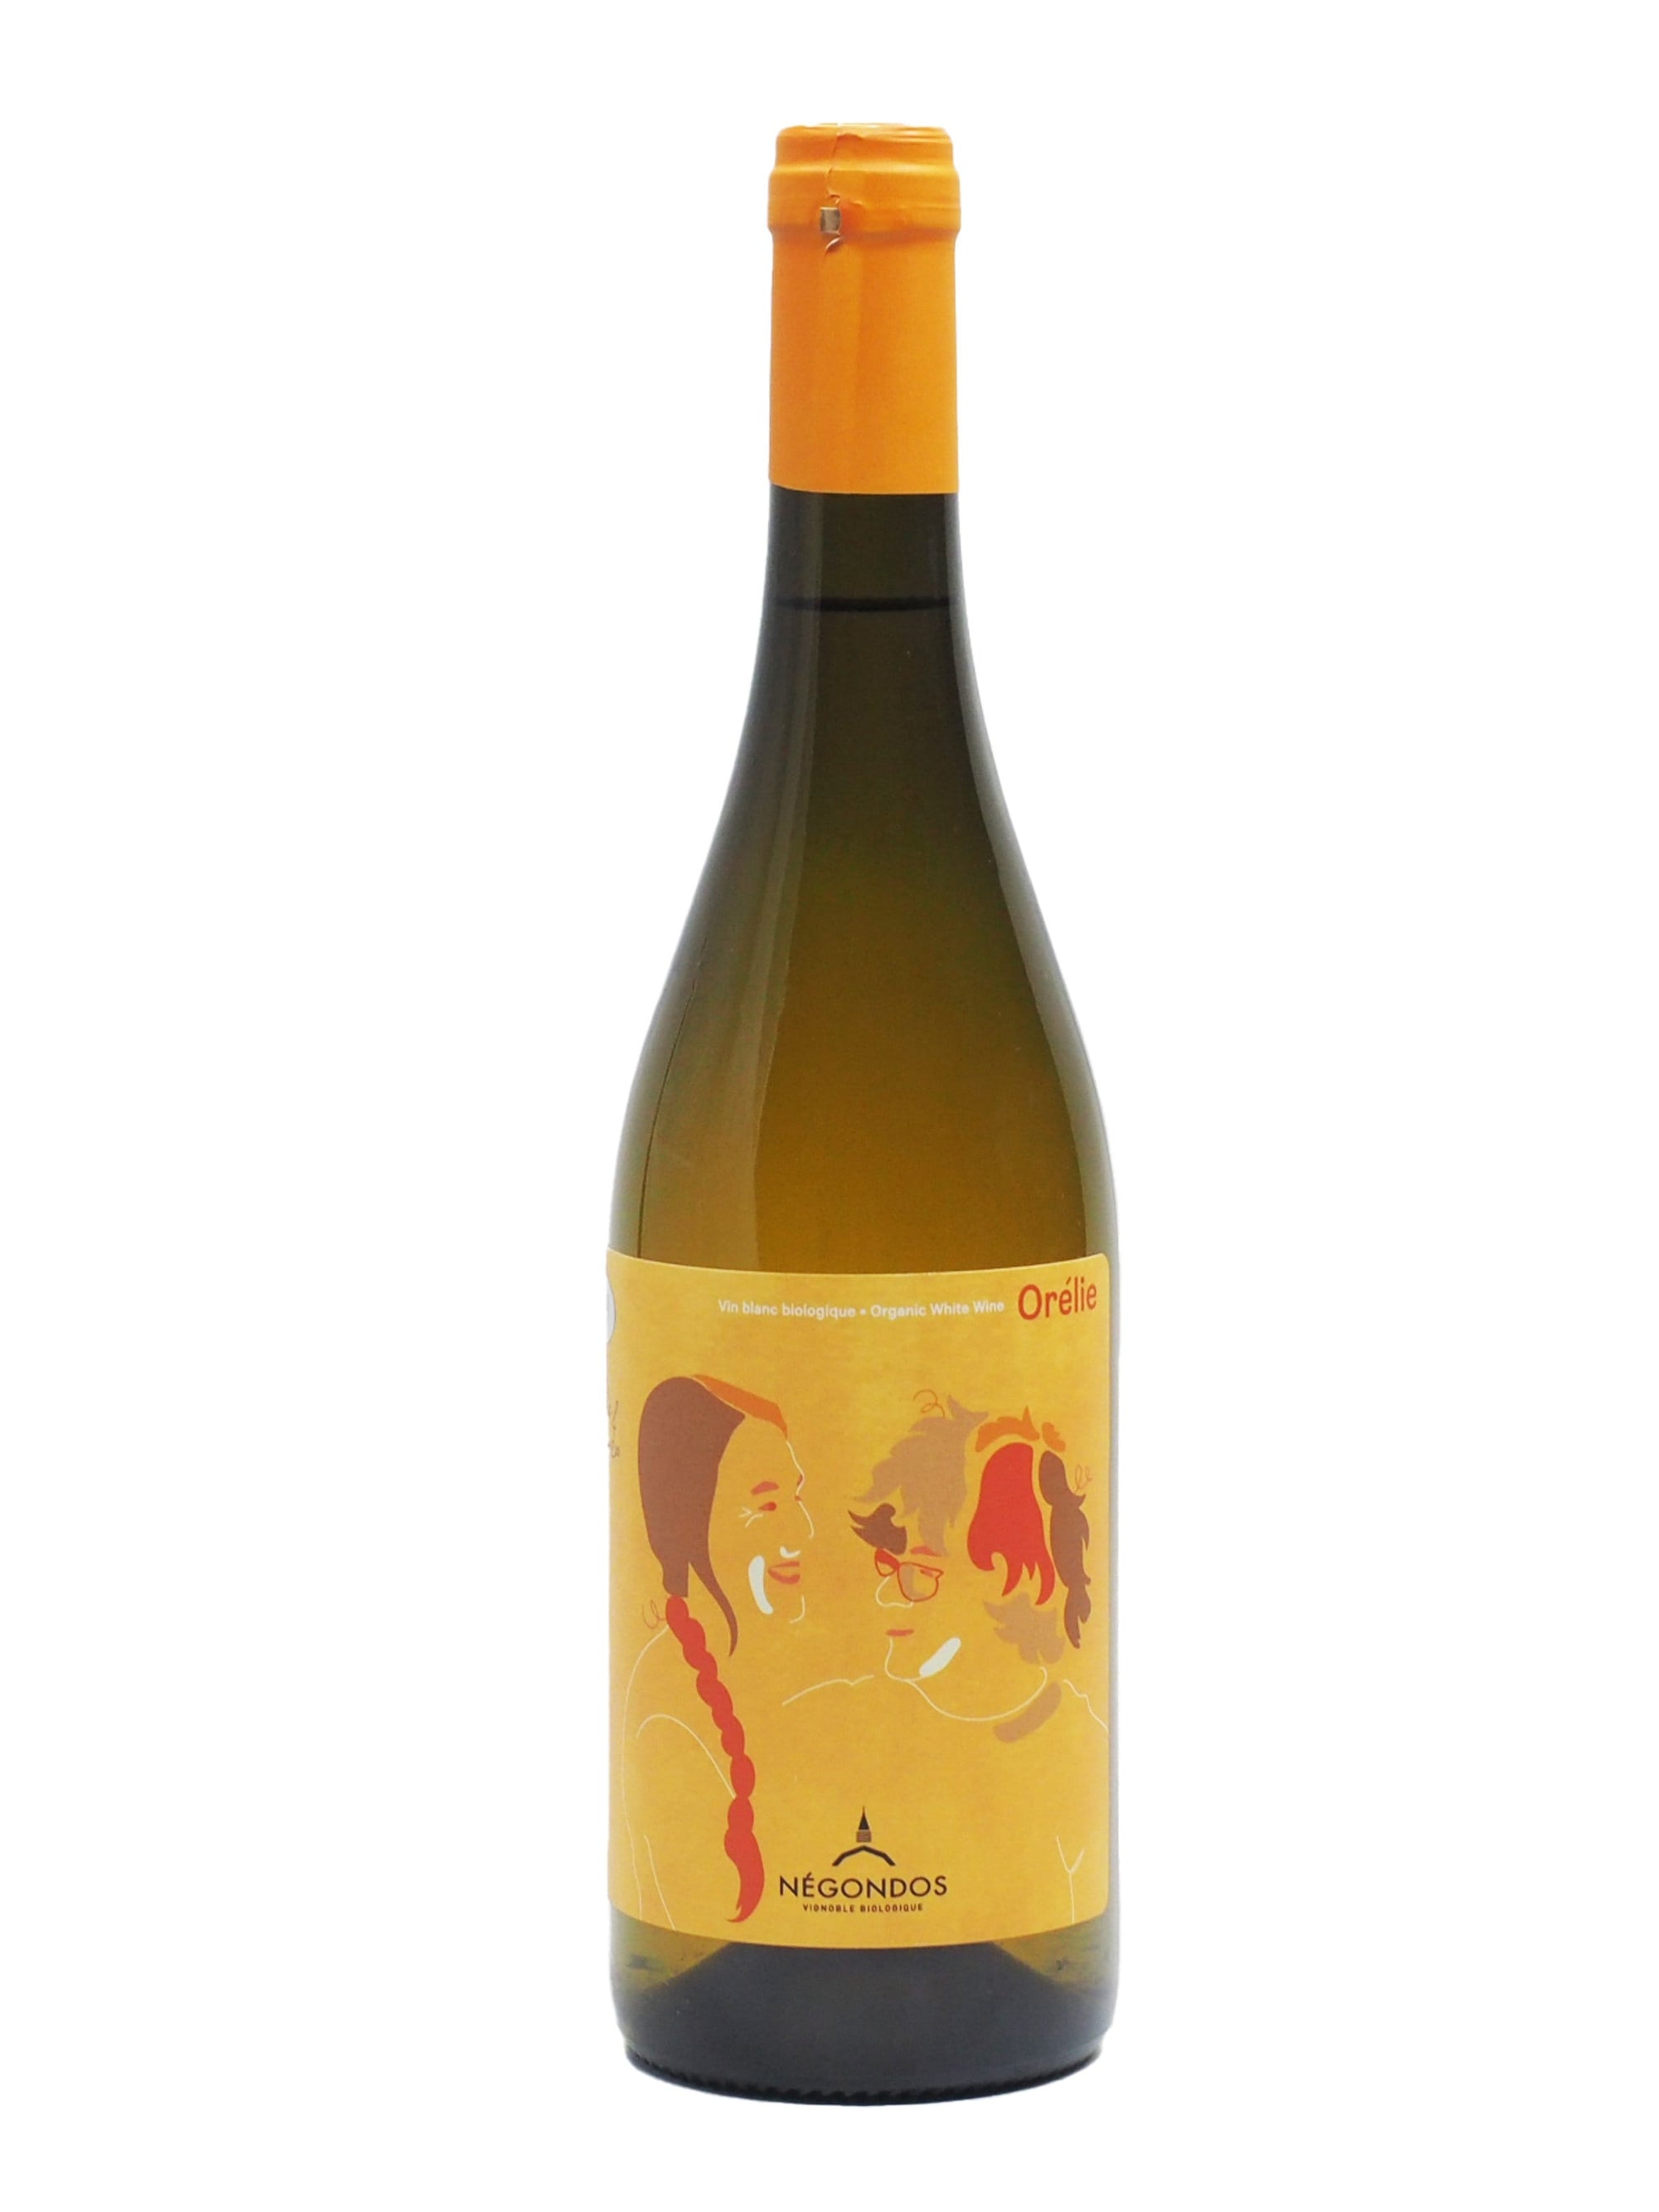 Vignoble Biologique Négondos Orélie - Vin blanc du Vignoble Biologique Négondos